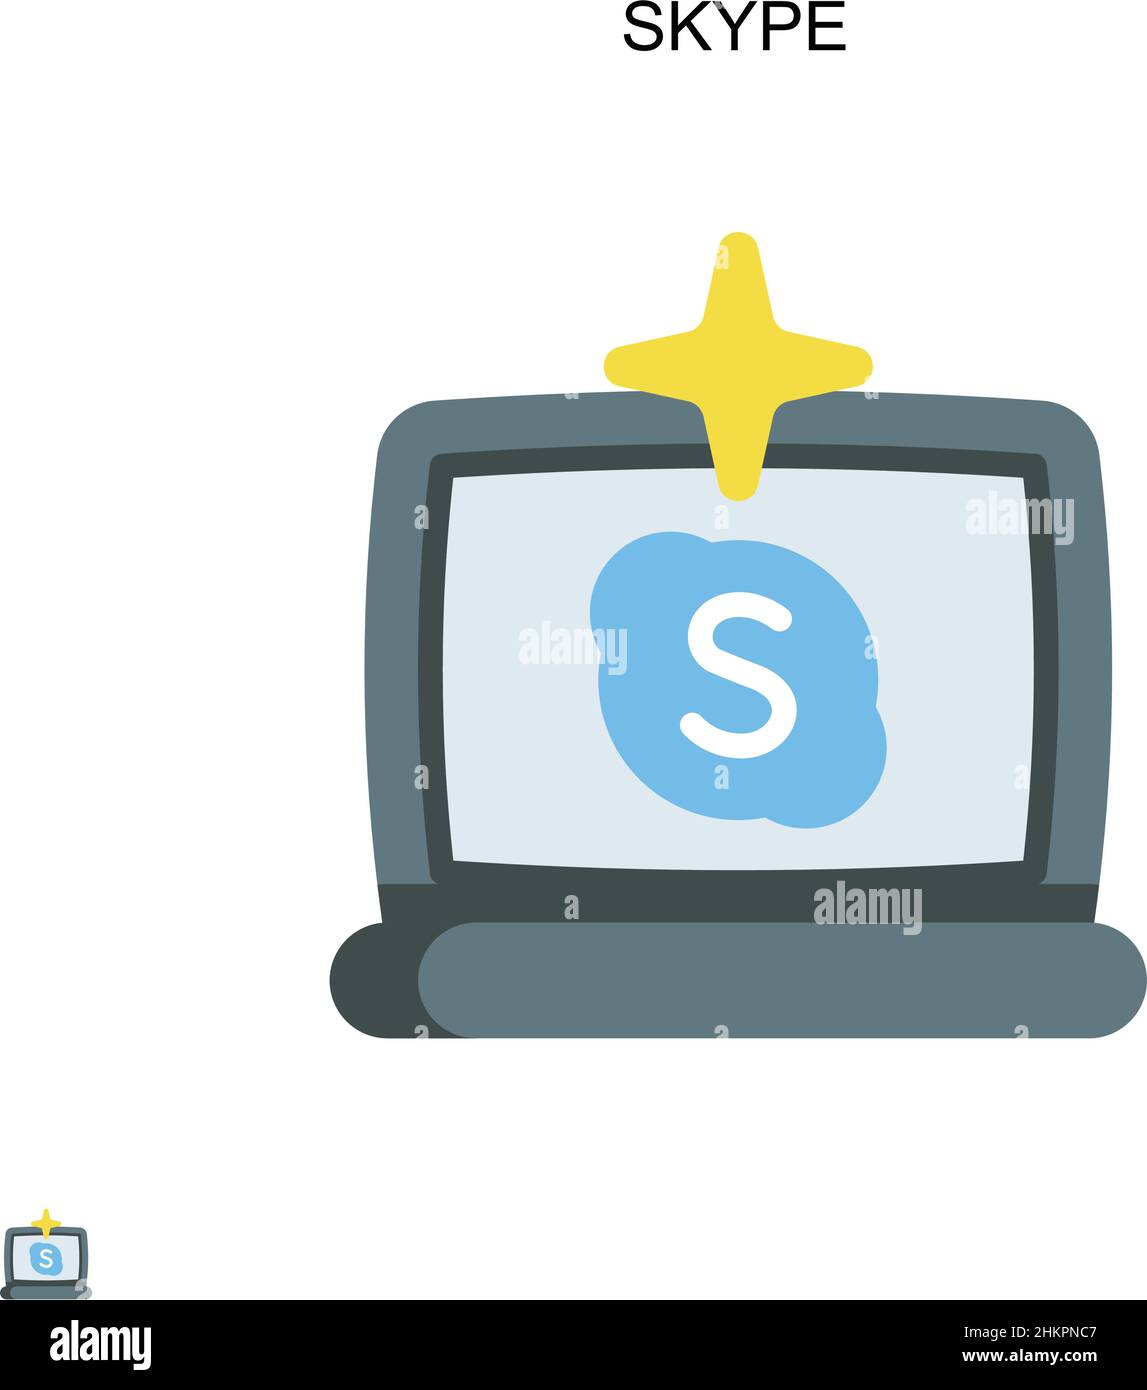 Icône Skype simple Vector.Modèle de conception de symbole d'illustration pour élément d'interface utilisateur Web mobile. Illustration de Vecteur